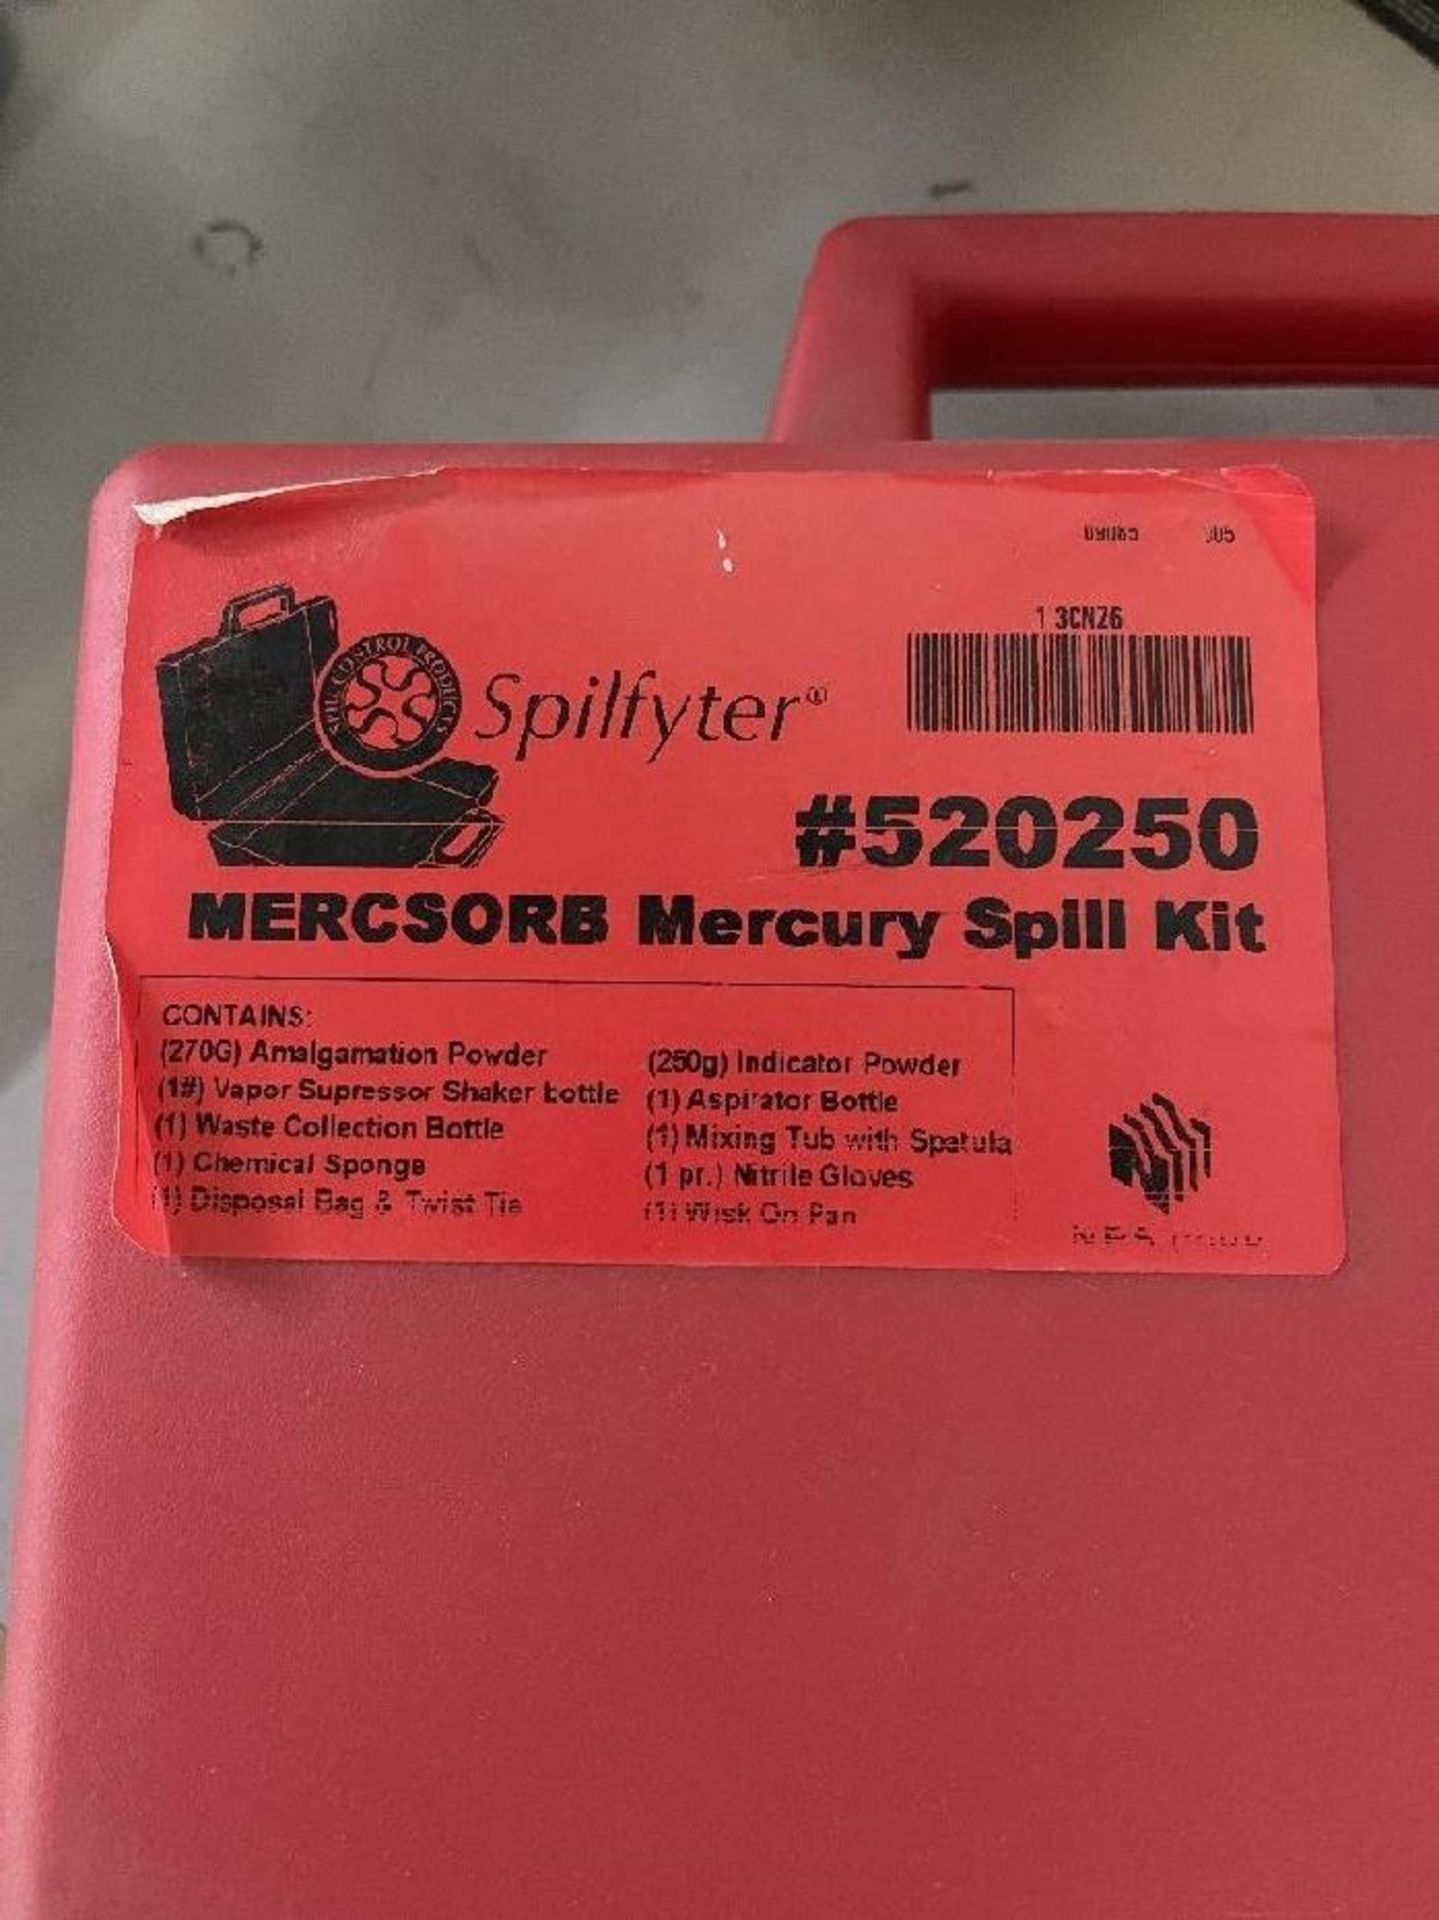 Spilfyter Mercsorb Mercury Spill Kit - Image 2 of 2